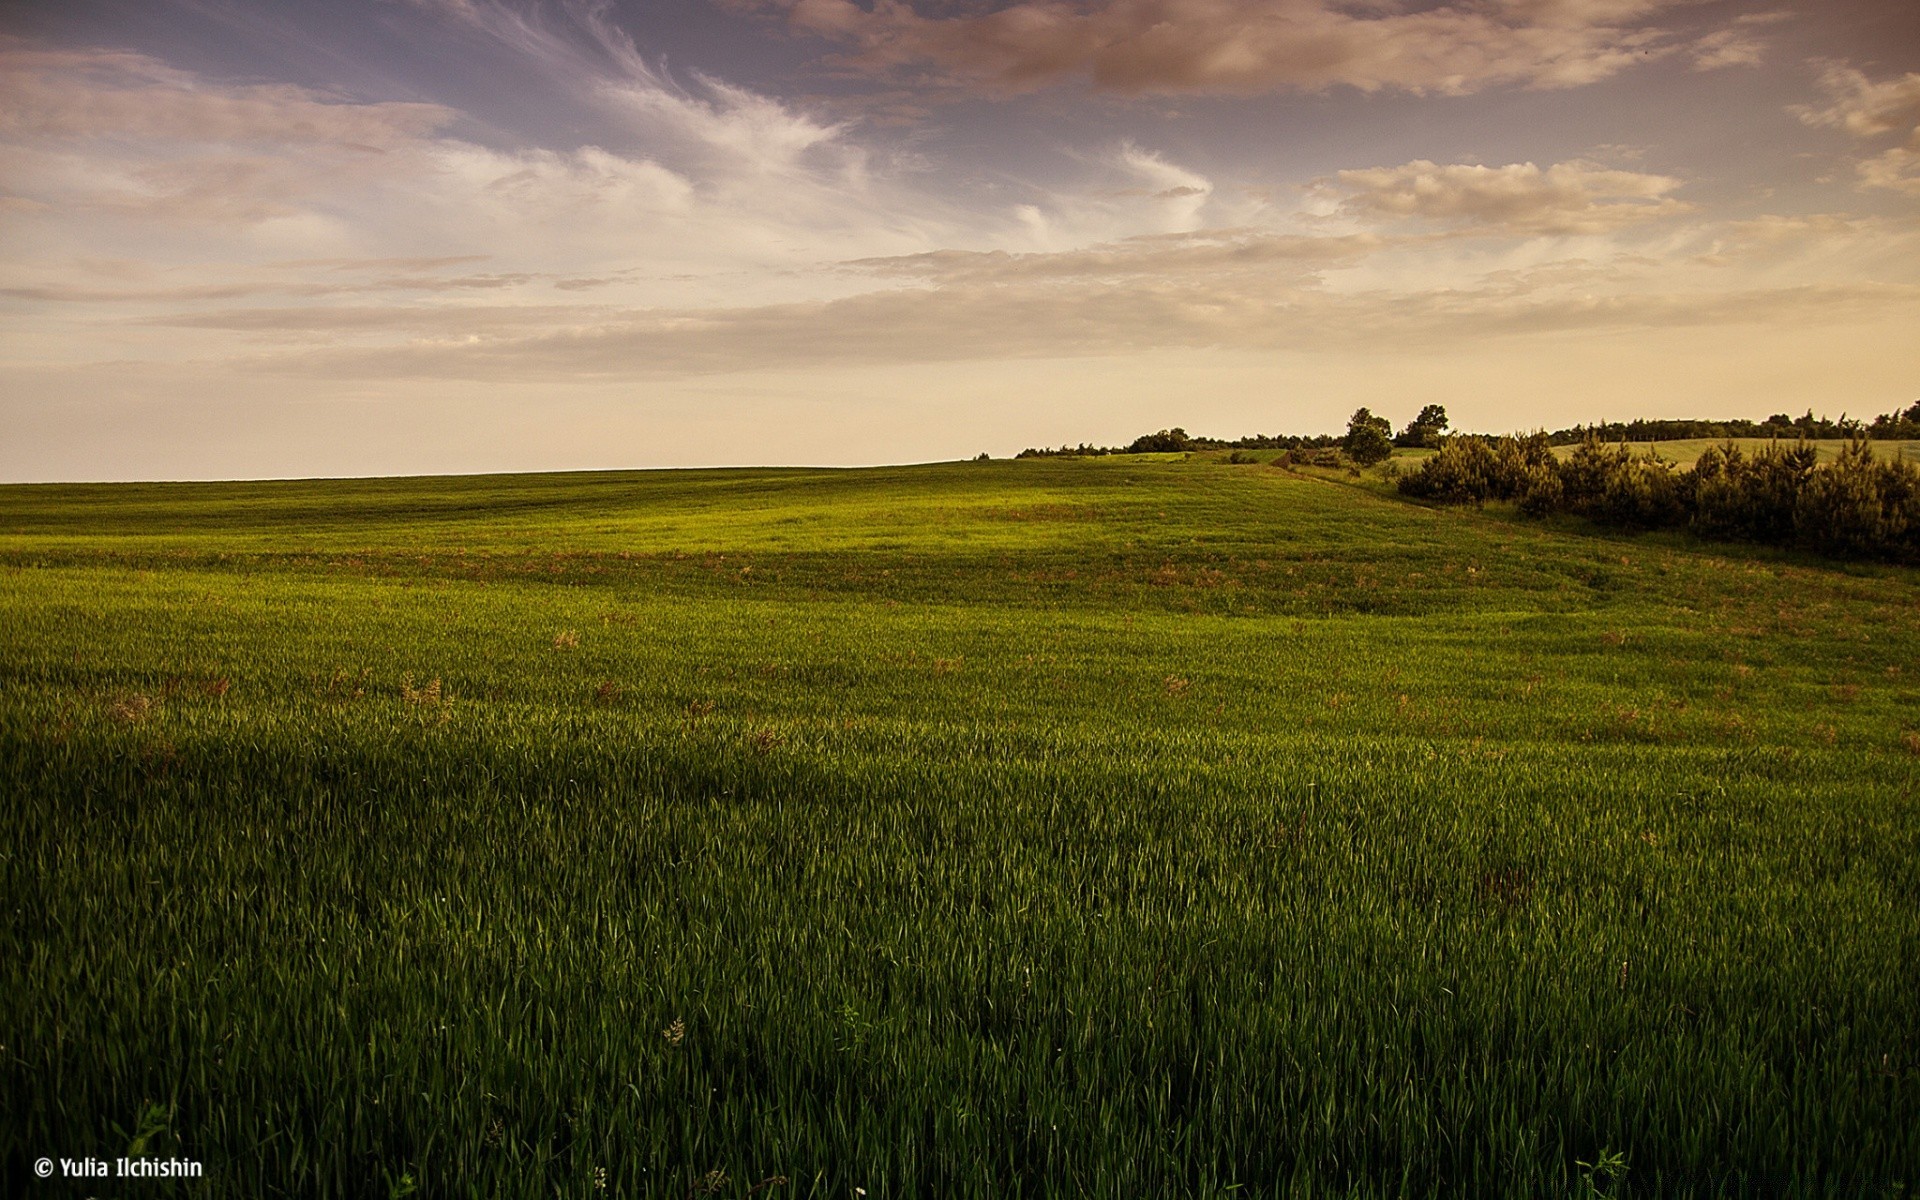 пейзажи пейзаж сельское хозяйство возделываемые земли сельской местности природа трава сельских поле рассвет закат на открытом воздухе небо солнце пастбище ферма пшеницы